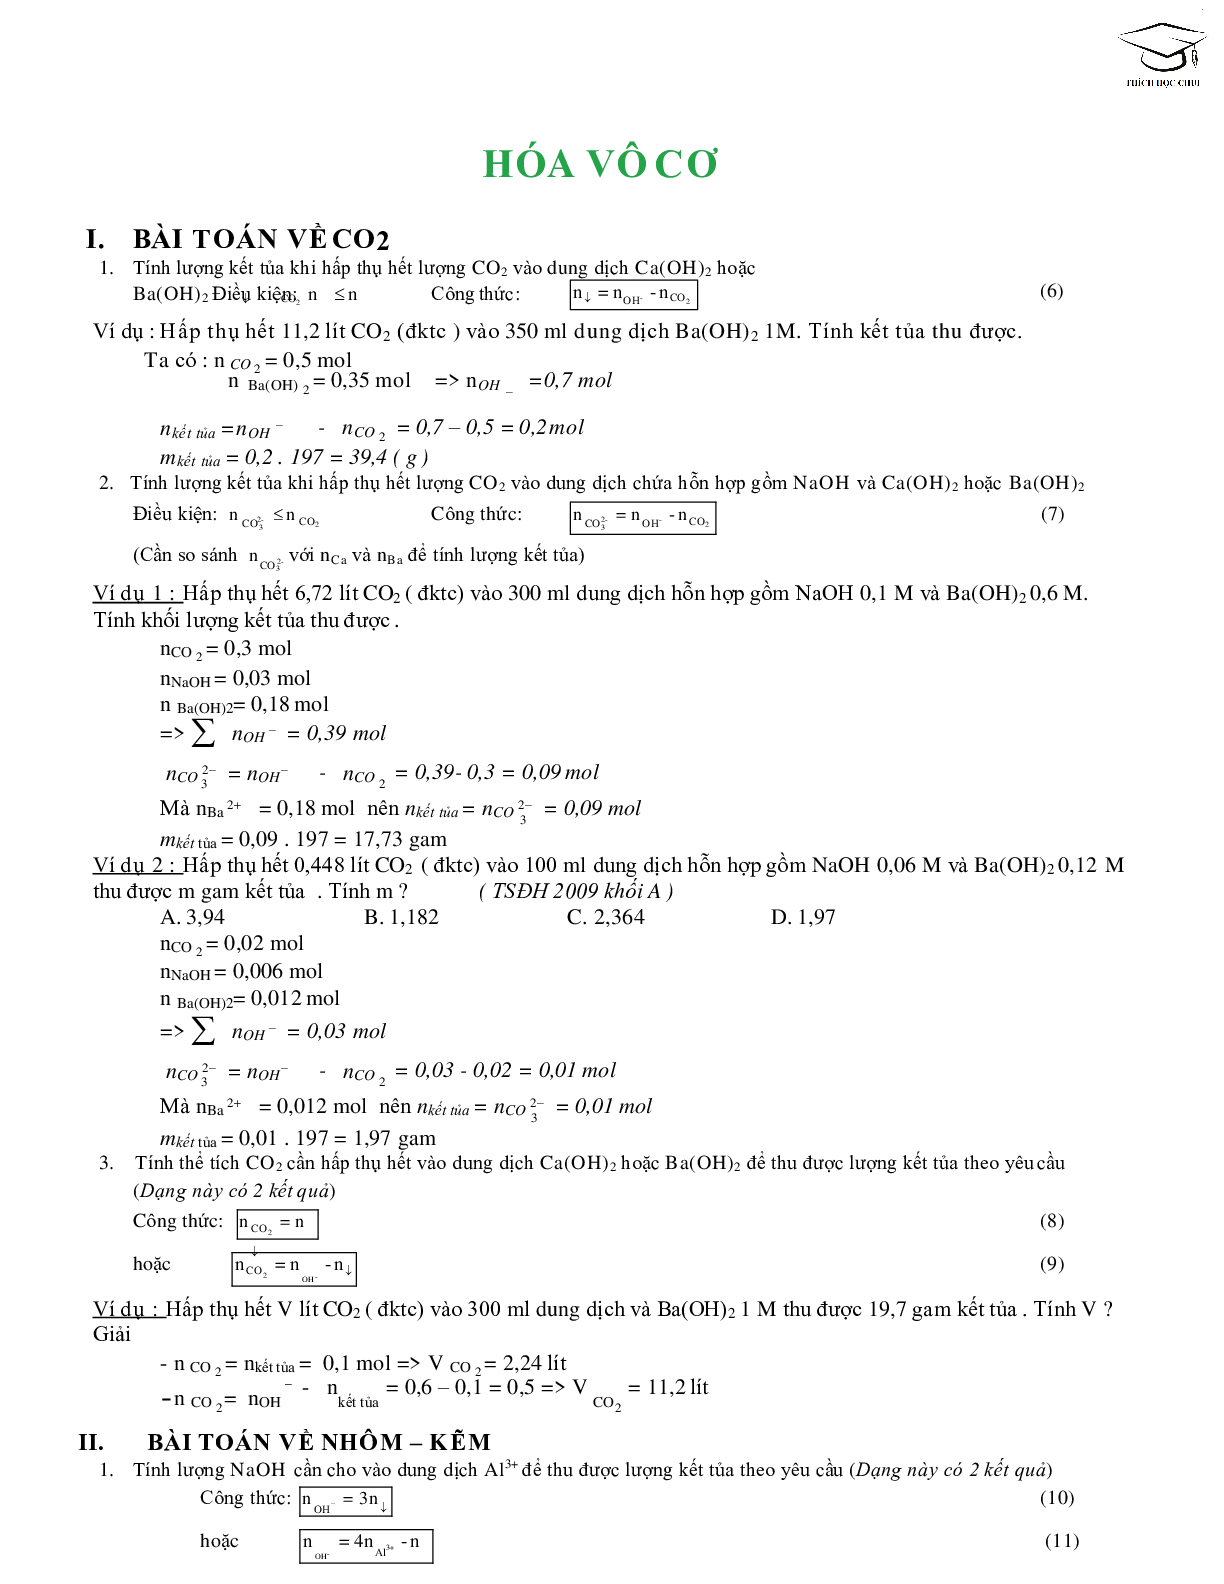 68 công thức giải nhanh bài tập trắc nghiệm môn hóa học lớp 12 (trang 2)